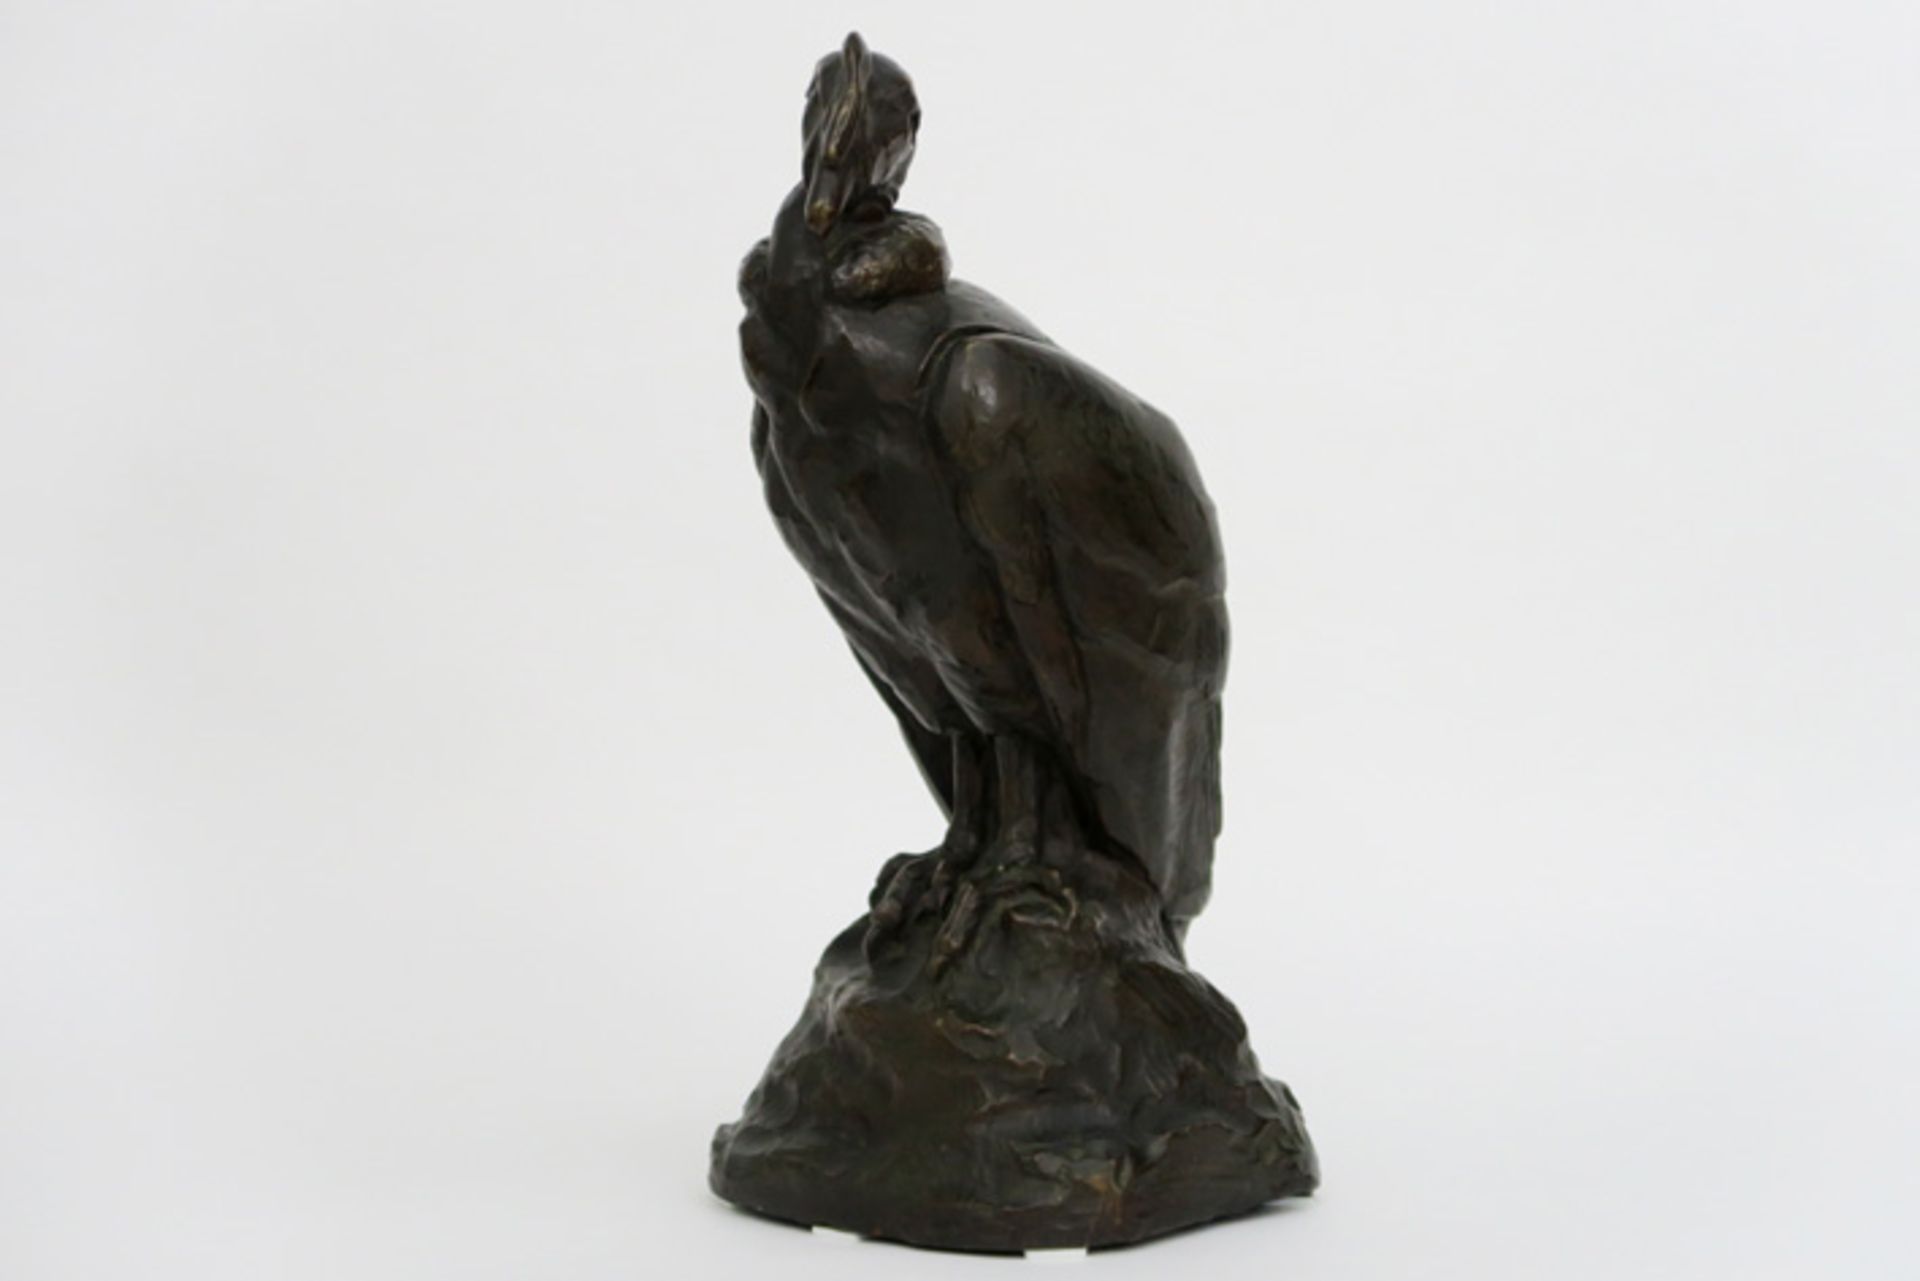 ANDRÉ JEAN (20° EEUW) mooie animaliersculptuur in brons : "Condor" - hoogte : [...]